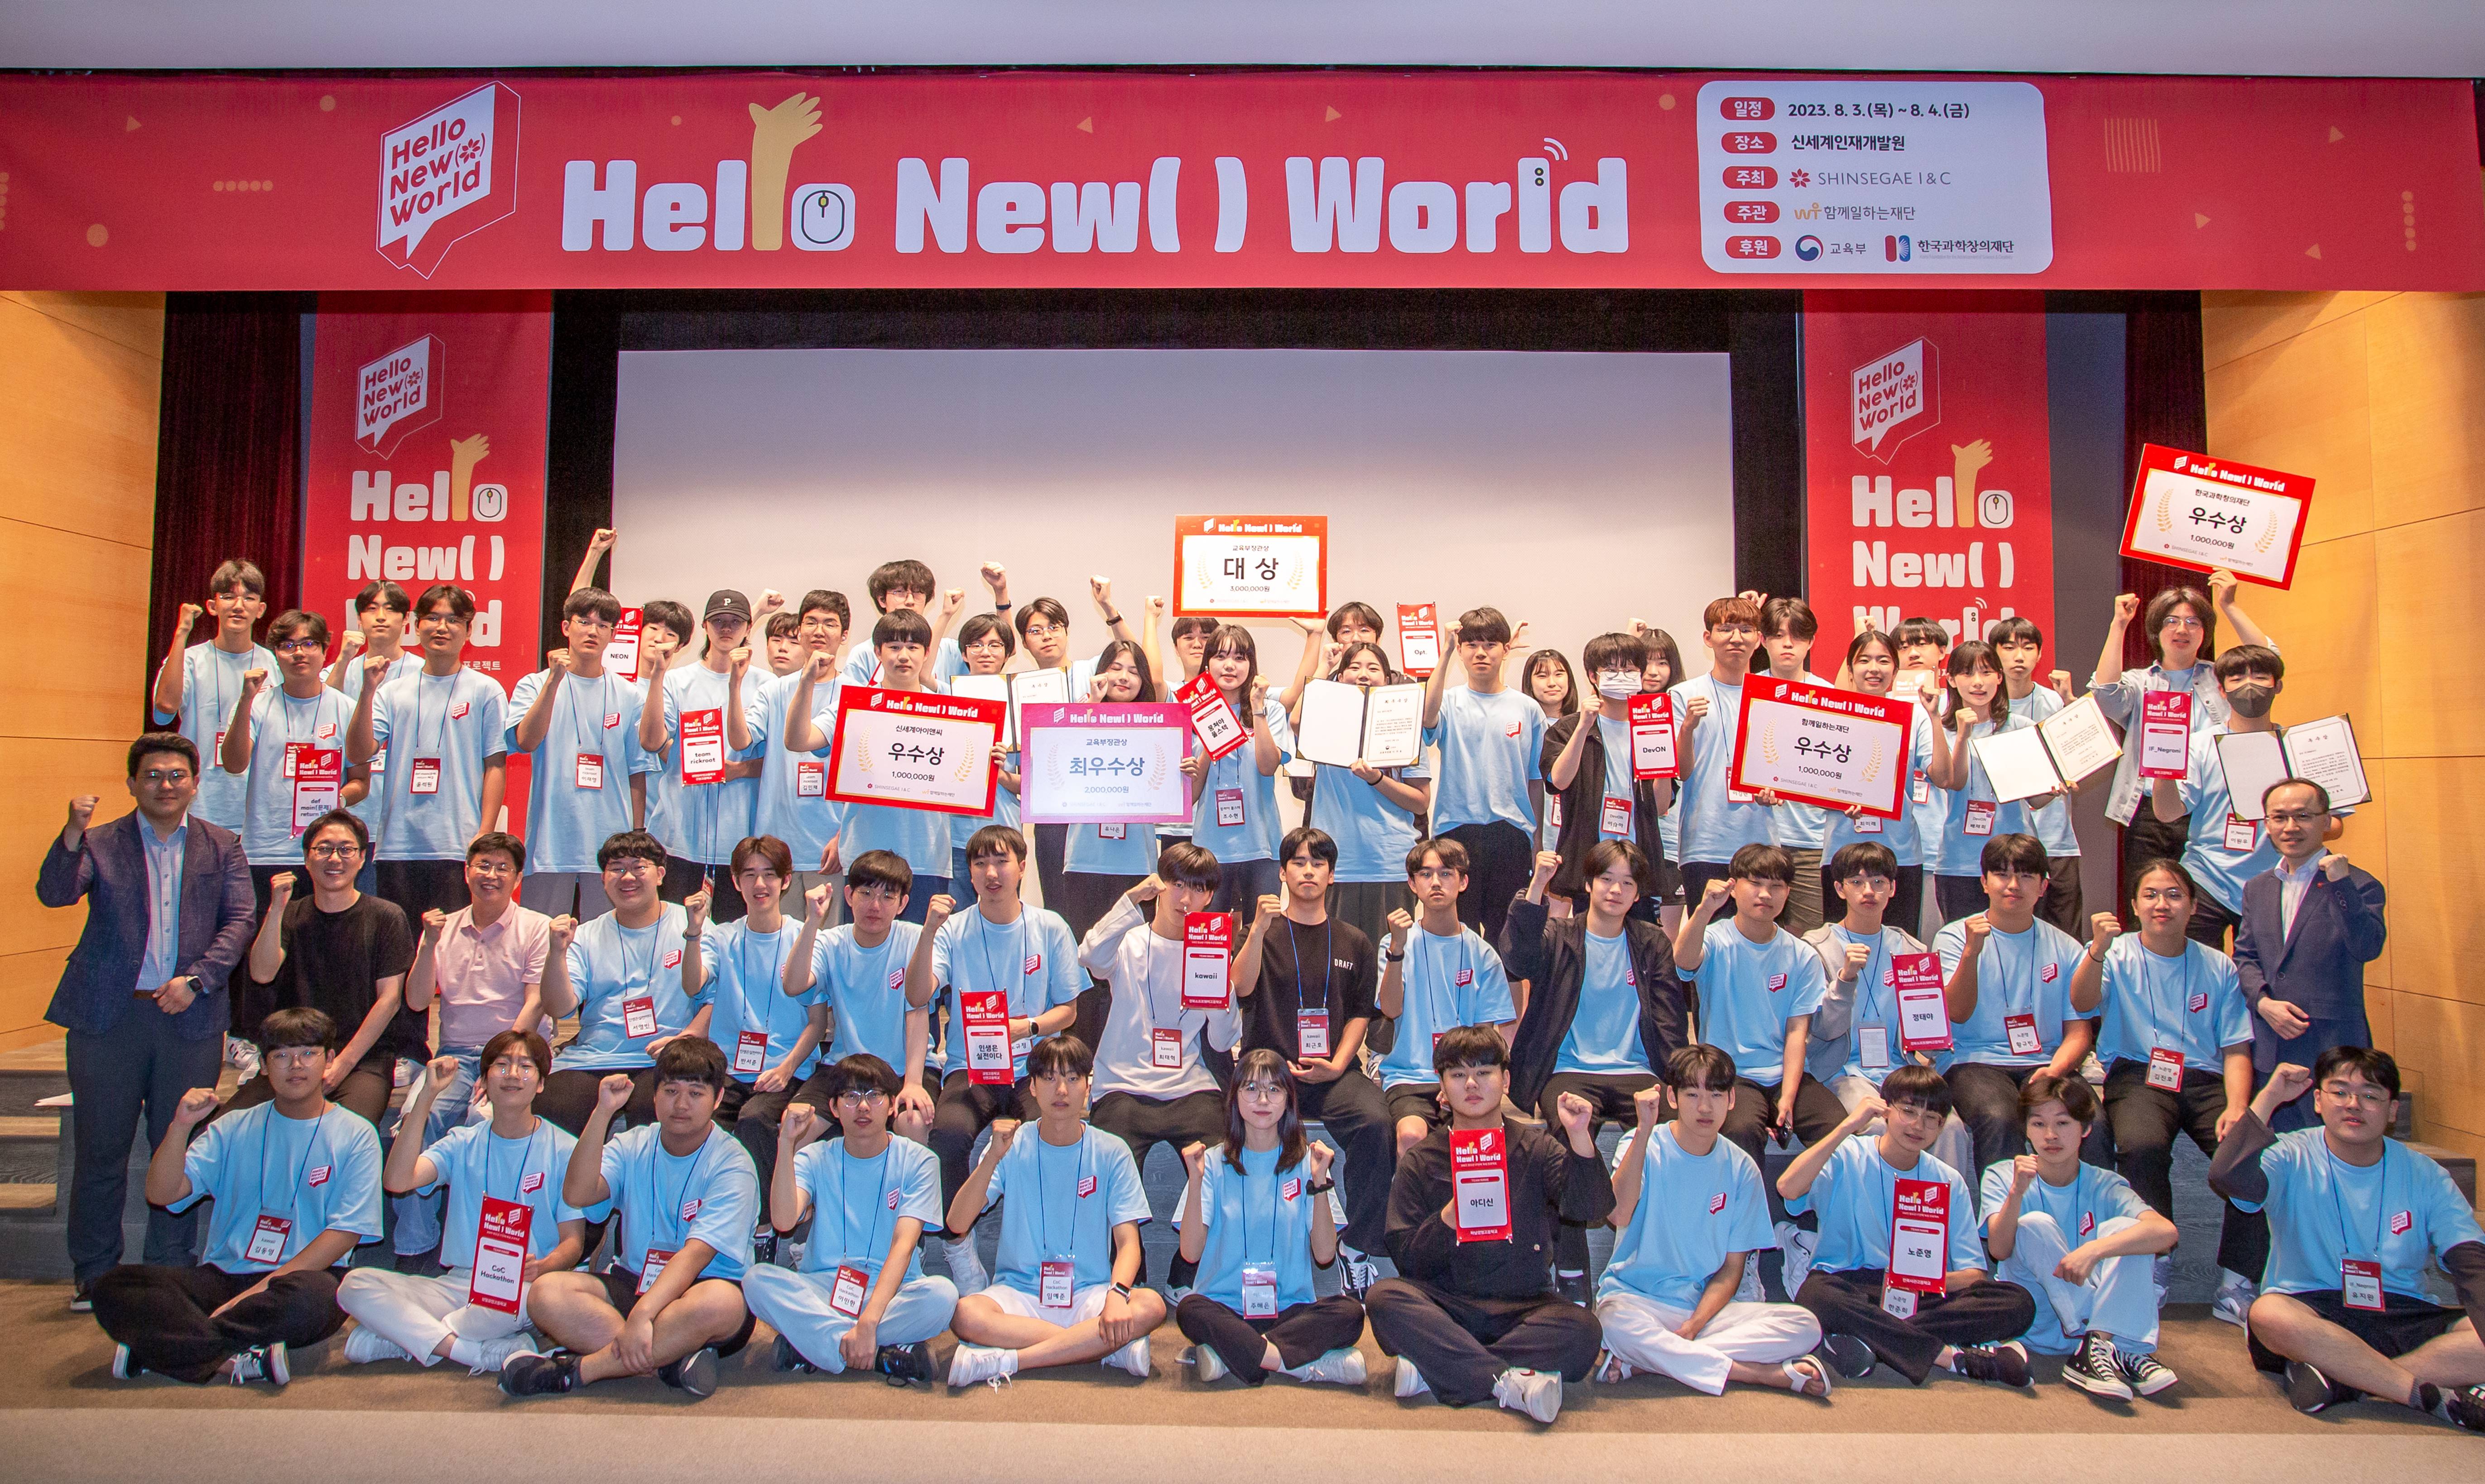 청소년 해커톤 대회 ‘헬로 뉴 월드(Hello New( ) World)’ 진행 